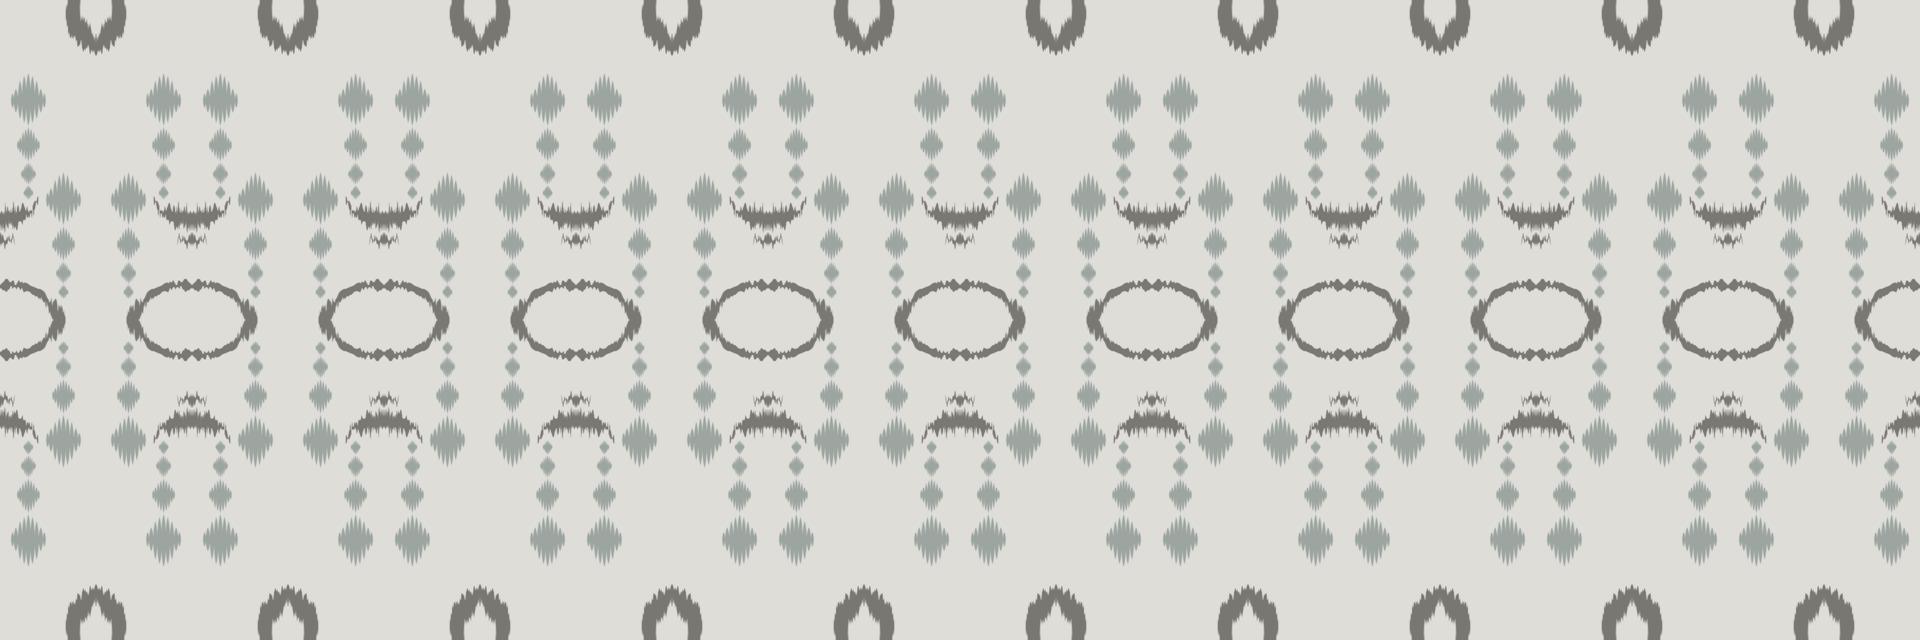 ikat listras tribal abstrato sem costura padrão. étnico geométrico ikkat batik vetor digital design têxtil para estampas tecido saree mughal pincel símbolo faixas textura kurti kurtis kurtas